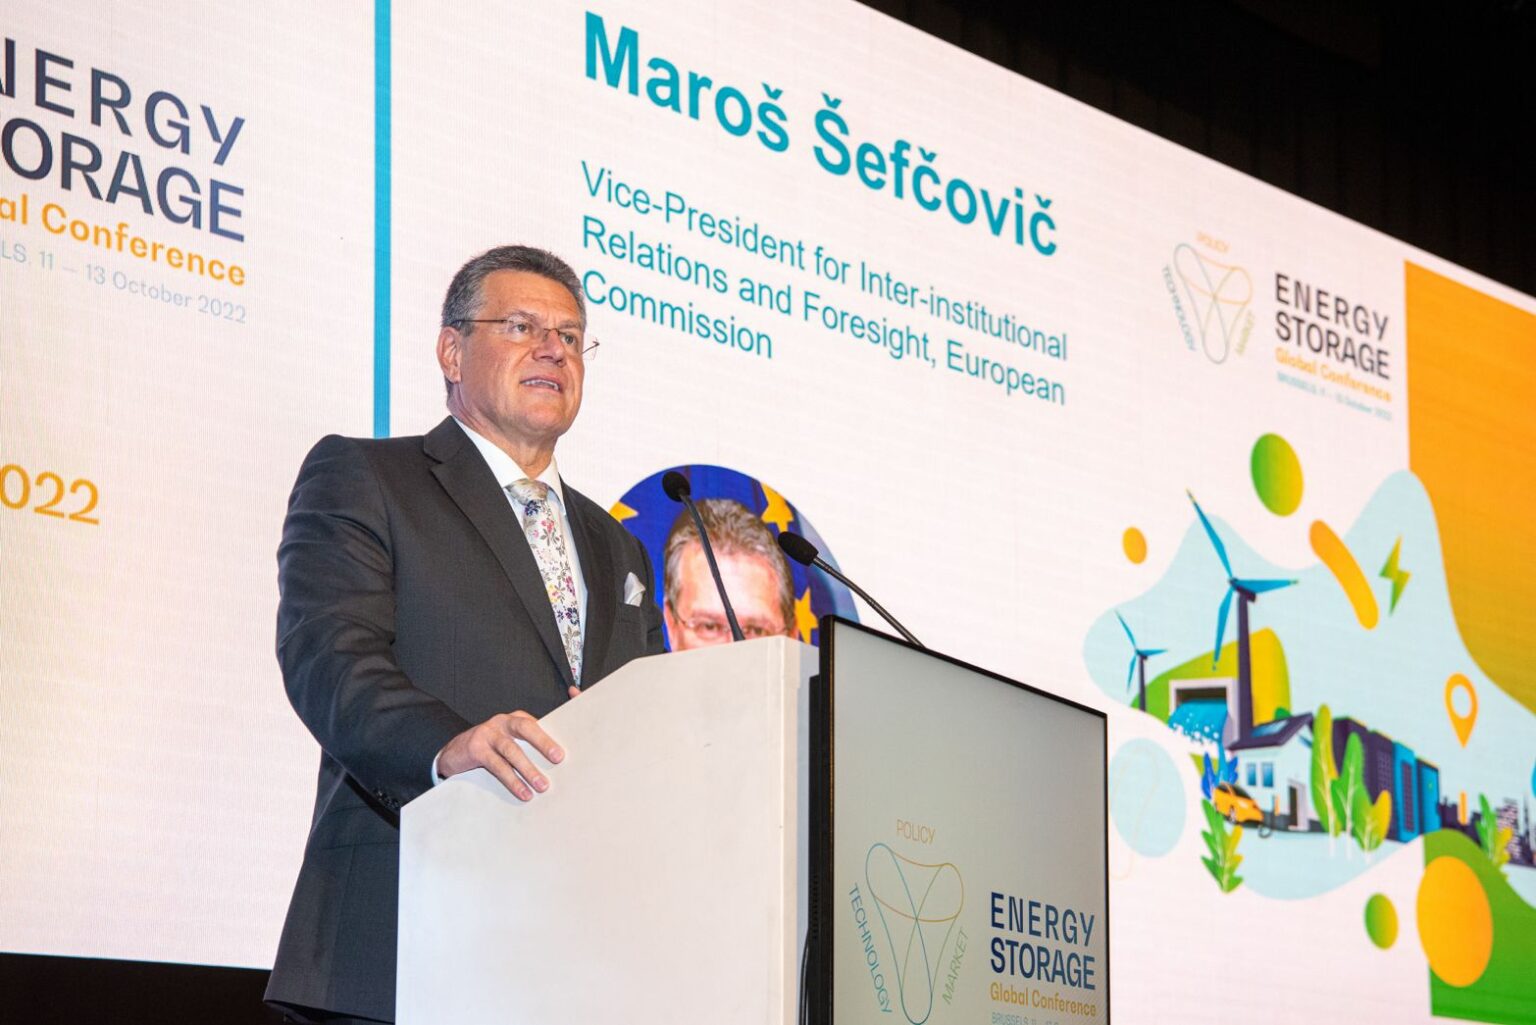 Maroš Šefčovič at ESGC 2022